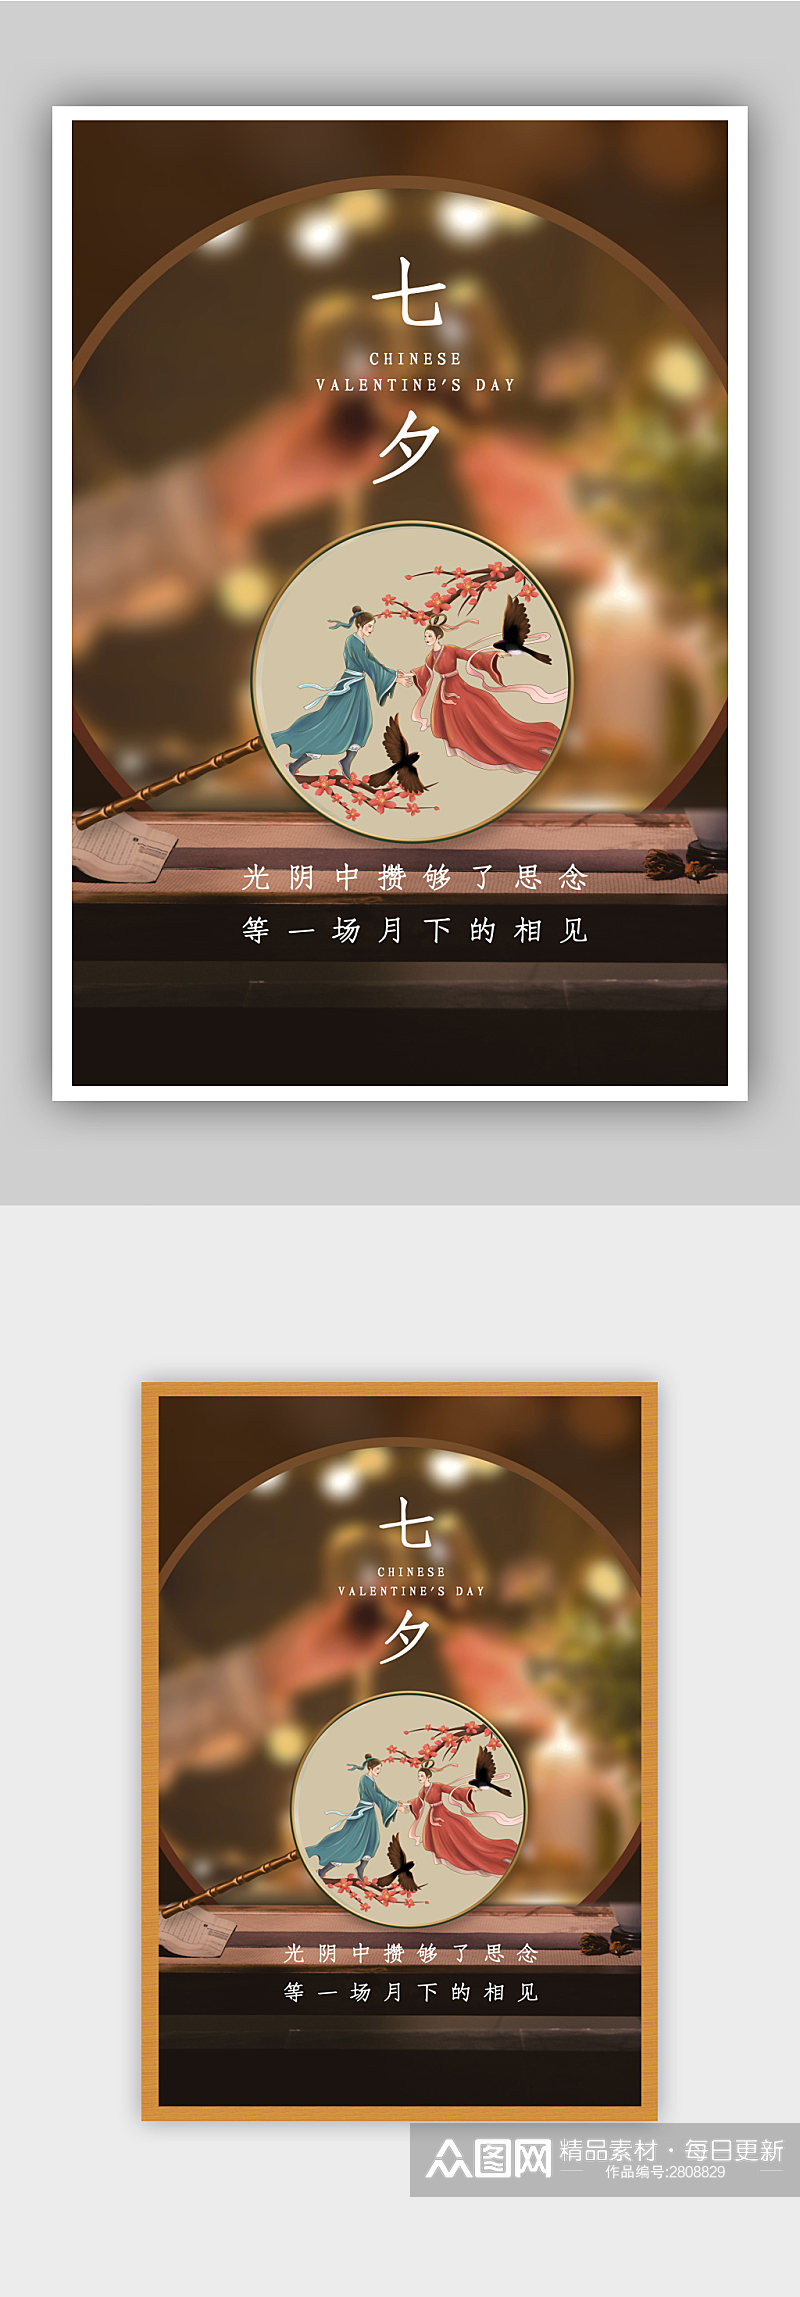 中国风七夕情人节节日海报素材